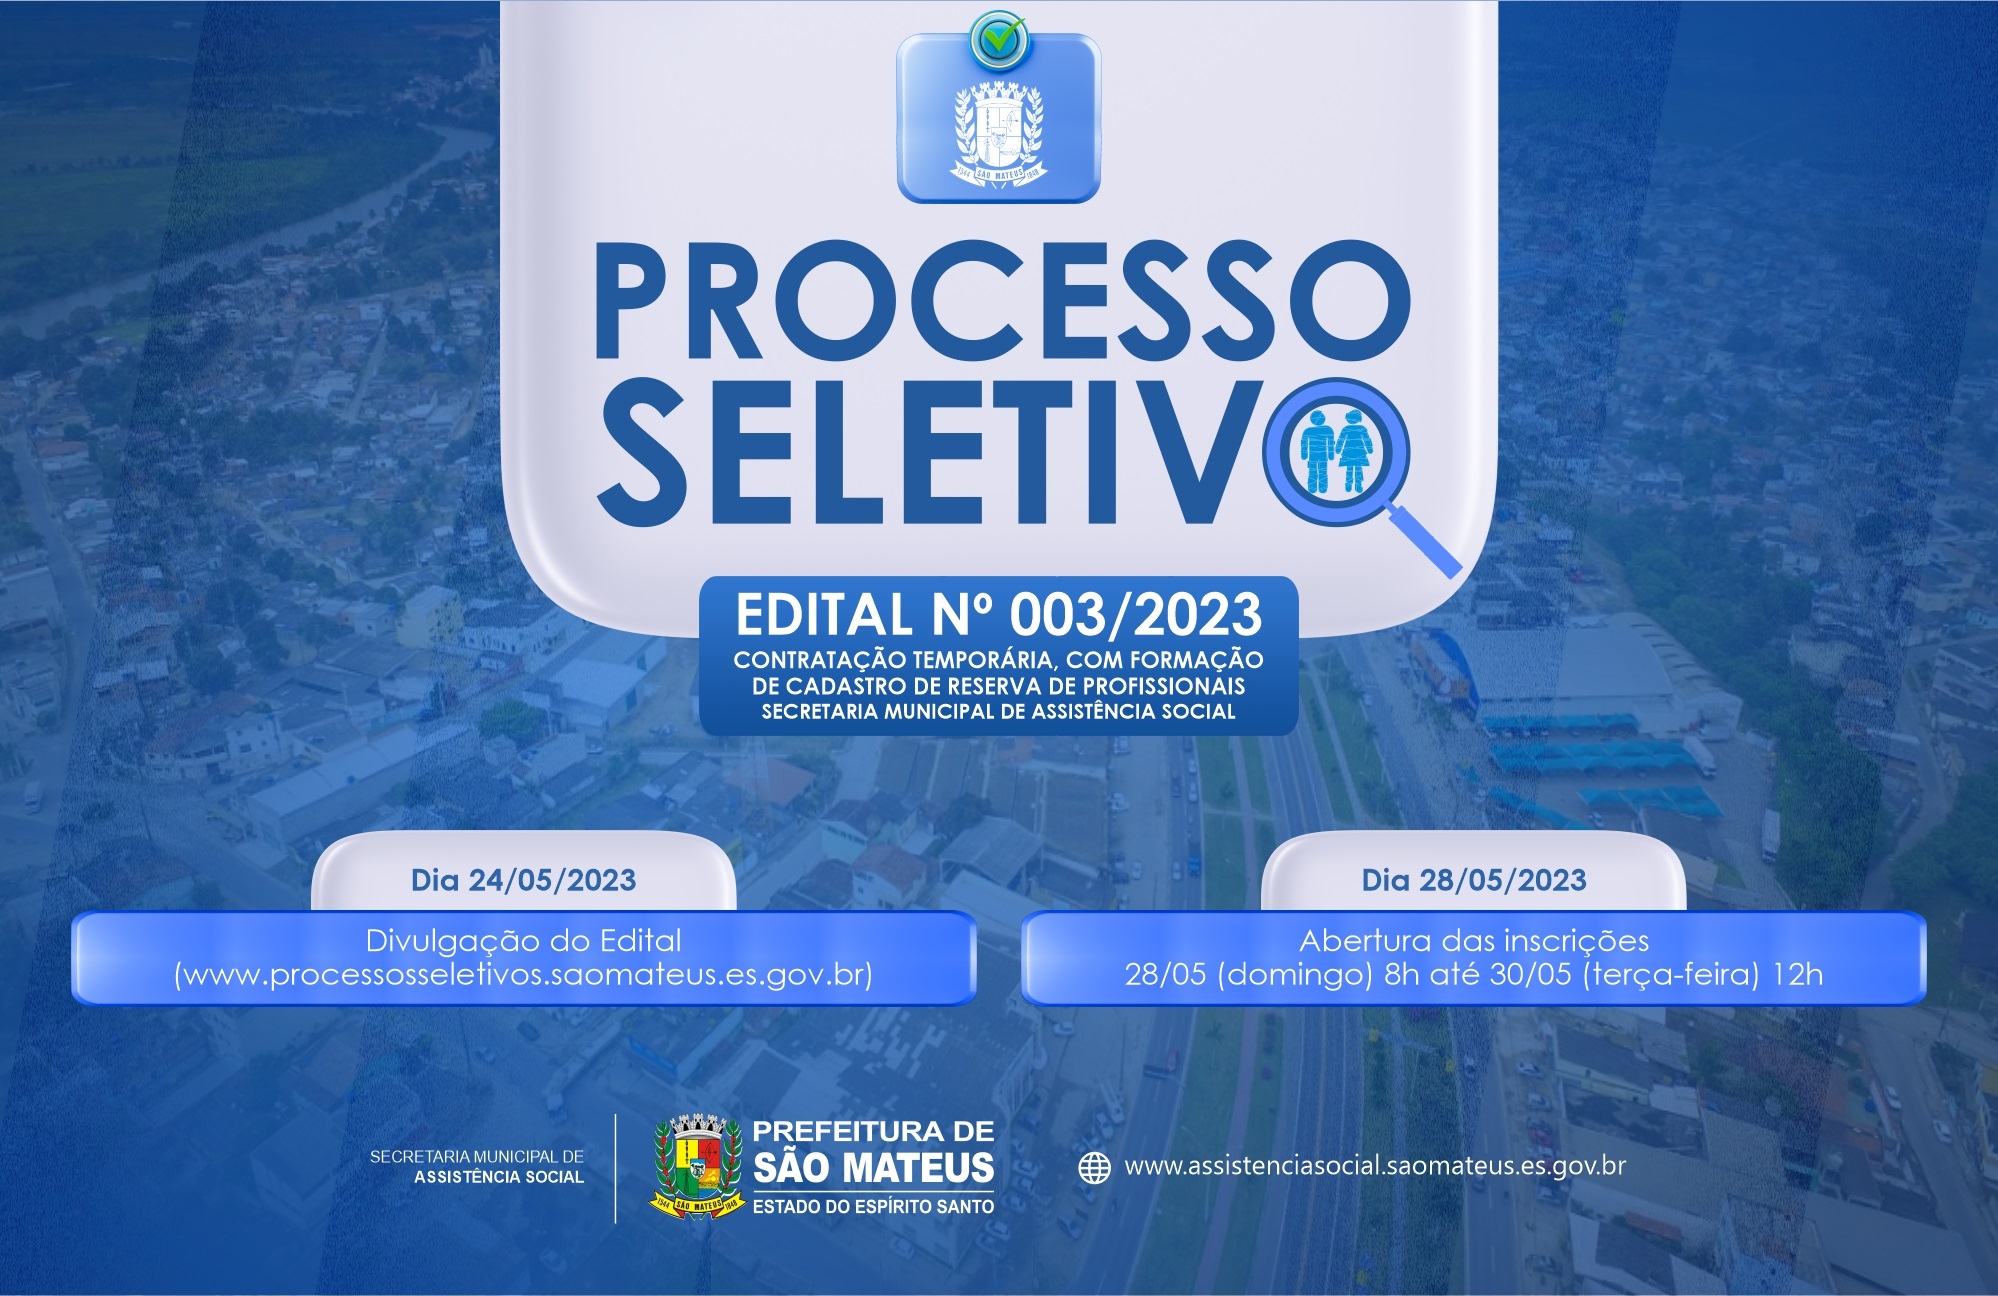 PREFEITURA DE SÃO MATEUS DIVULGA EDITAL Nº 003/2023 DO PROCESSO SELETIVO SIMPLIFICADO DA SECRETARIA MUNICIPAL DE ASSISTÊNCIA SOCIAL